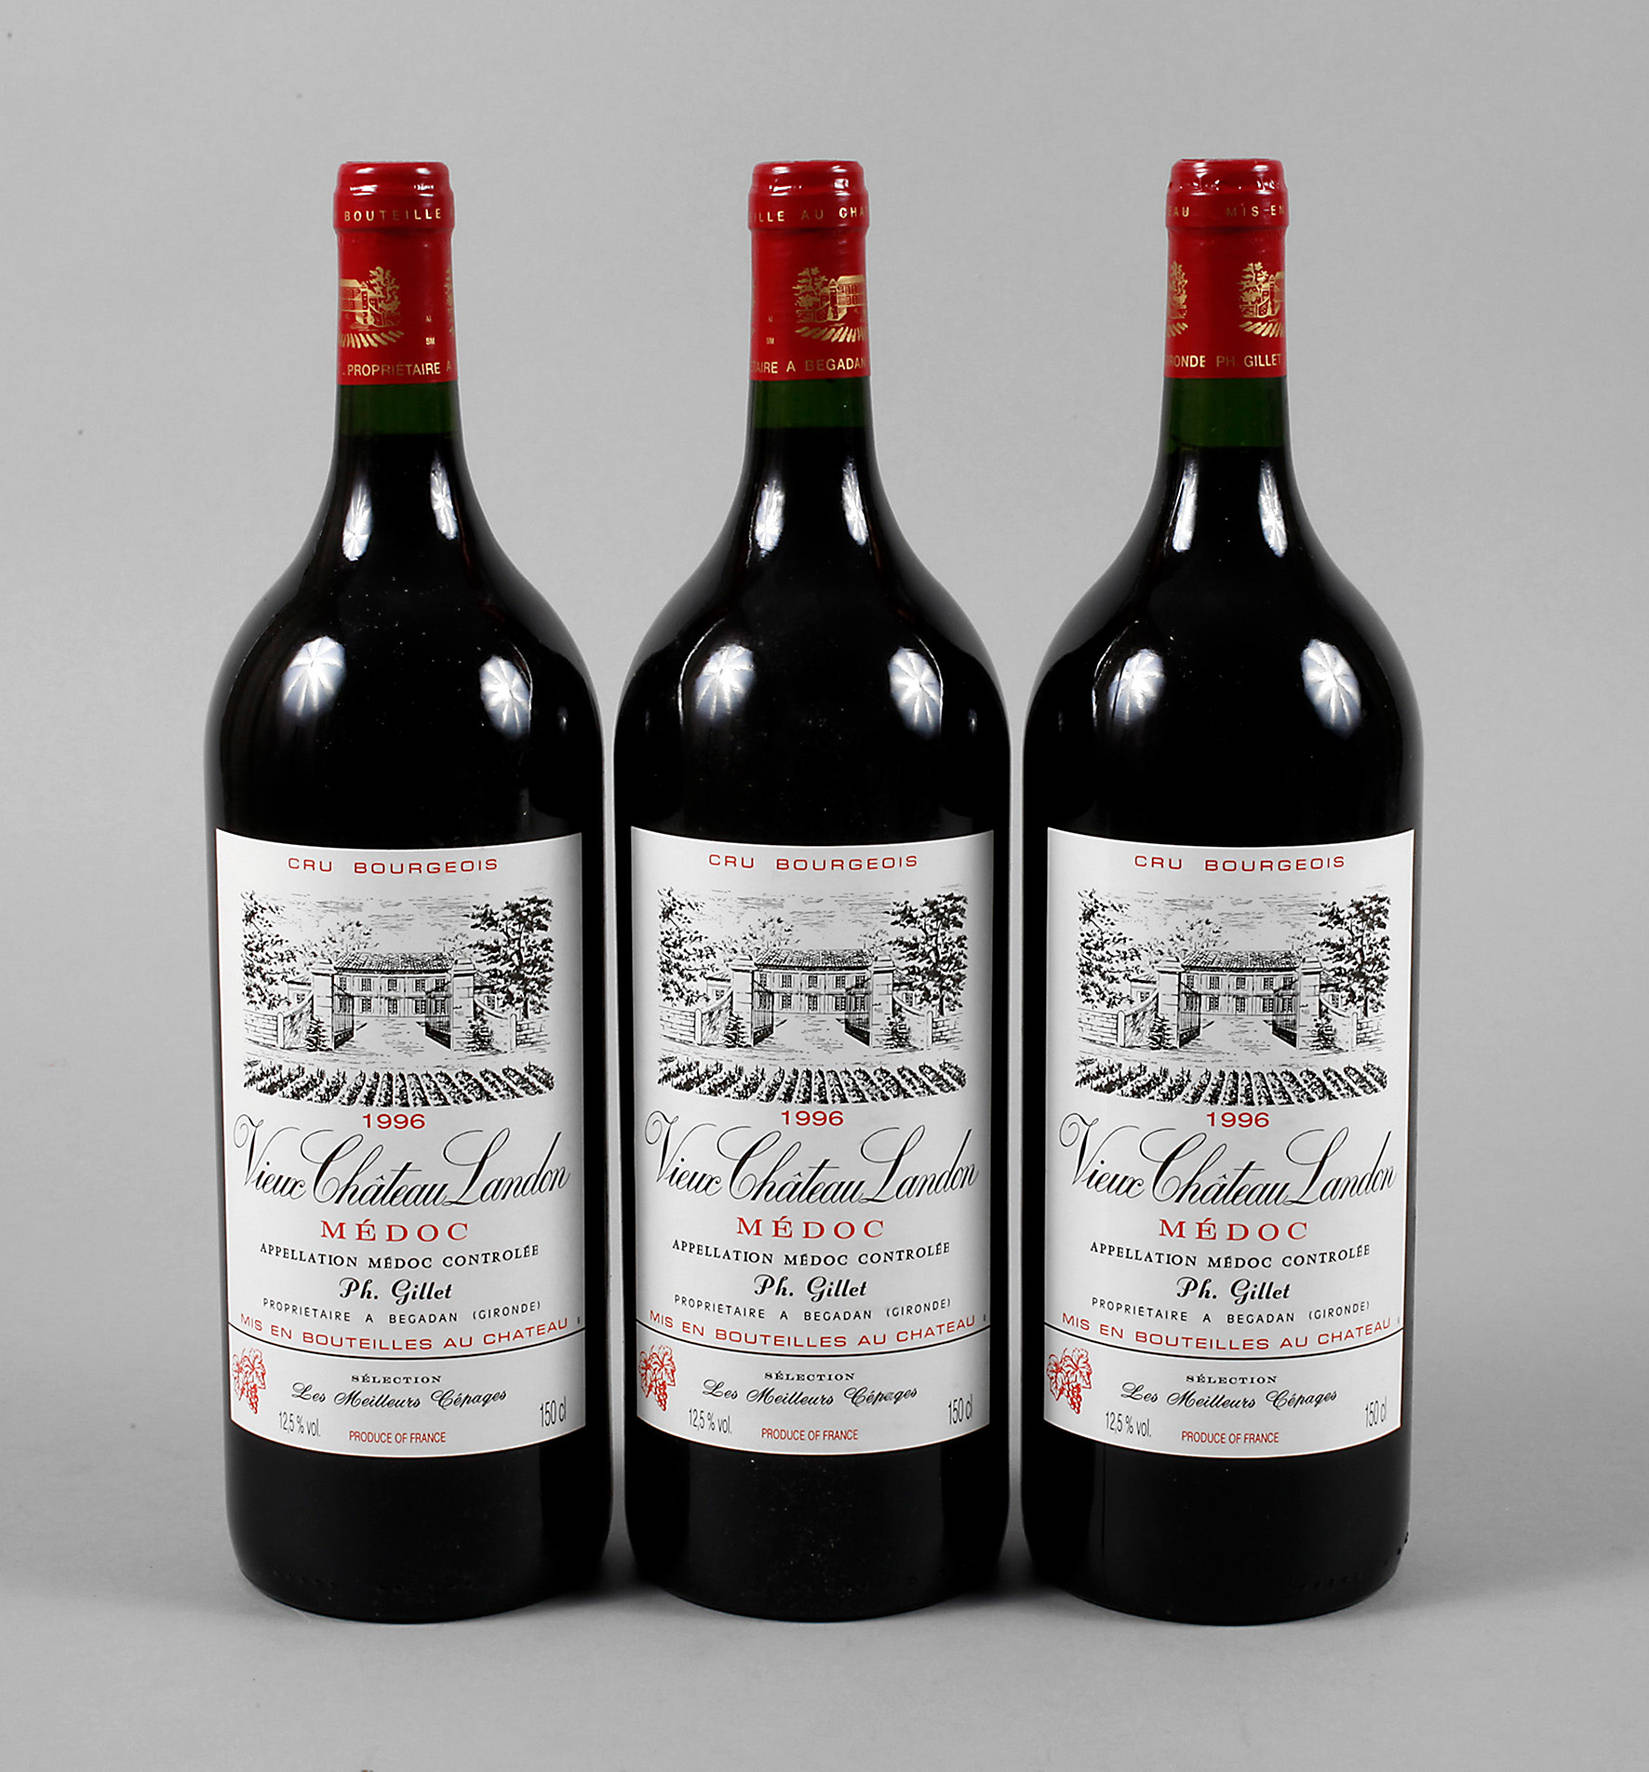 Drei Flaschen ”Vieux Chateaux Landon”